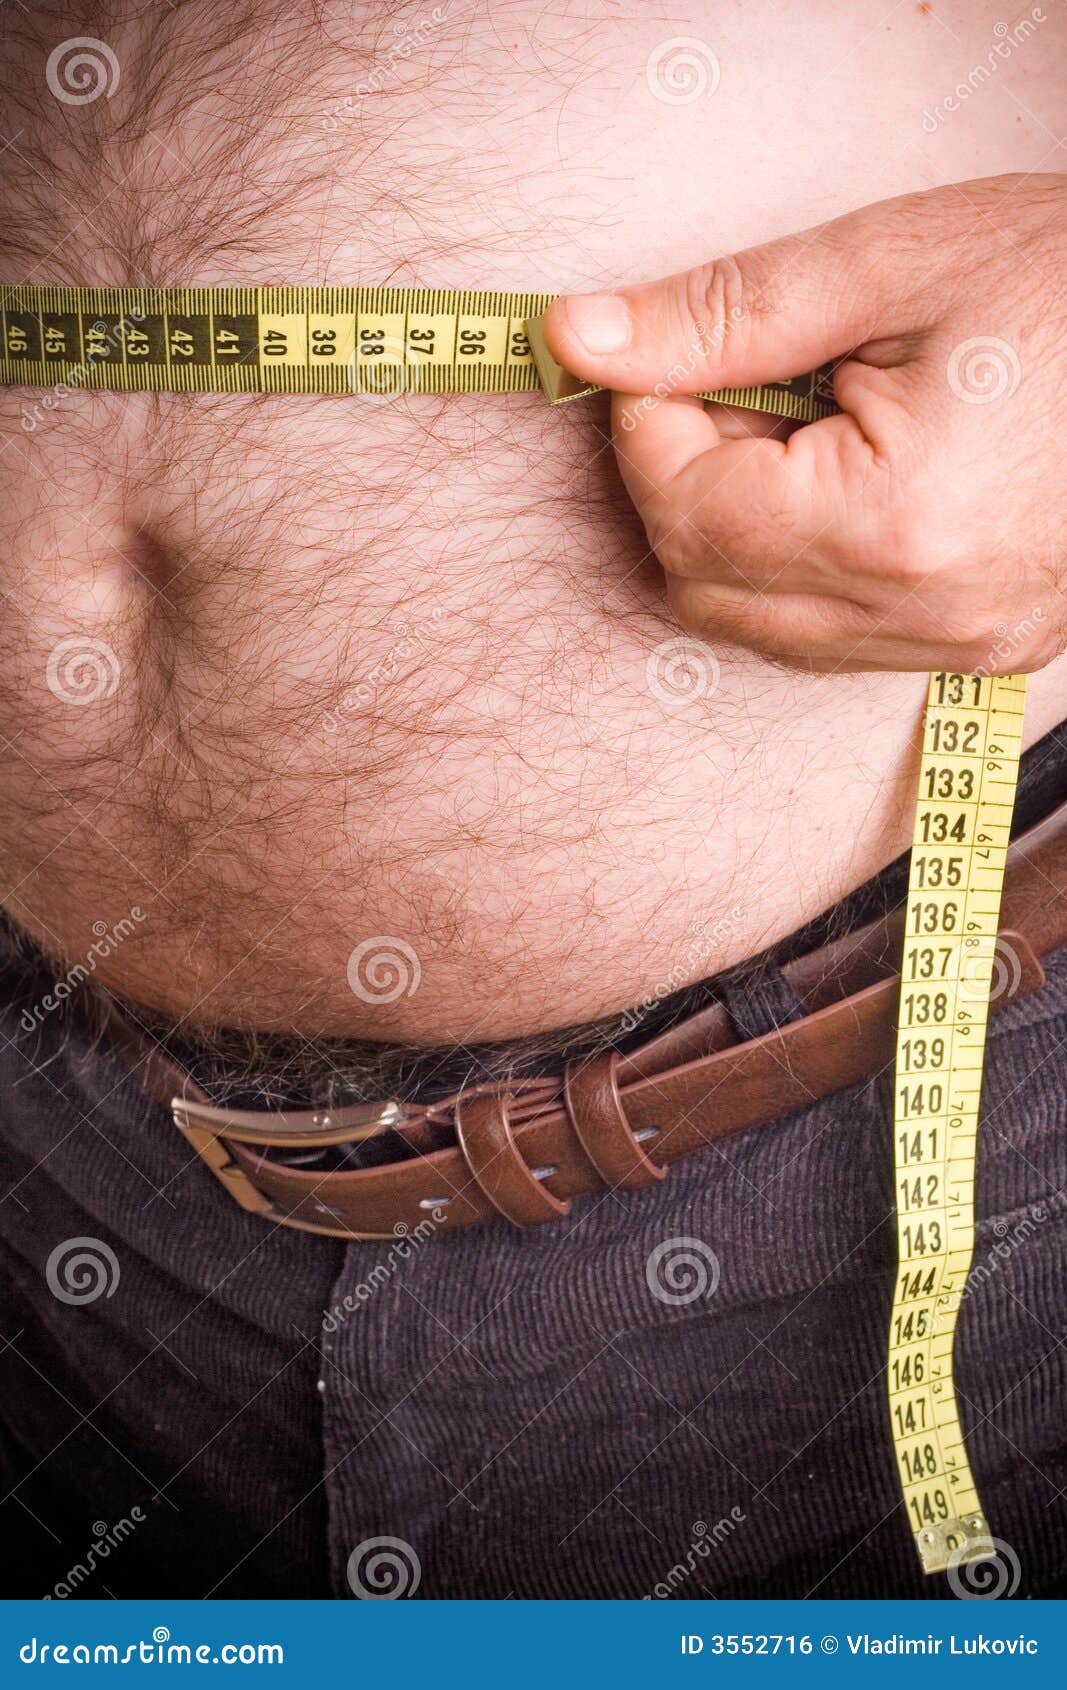 объем талии груди бедер у мужчин фото 74